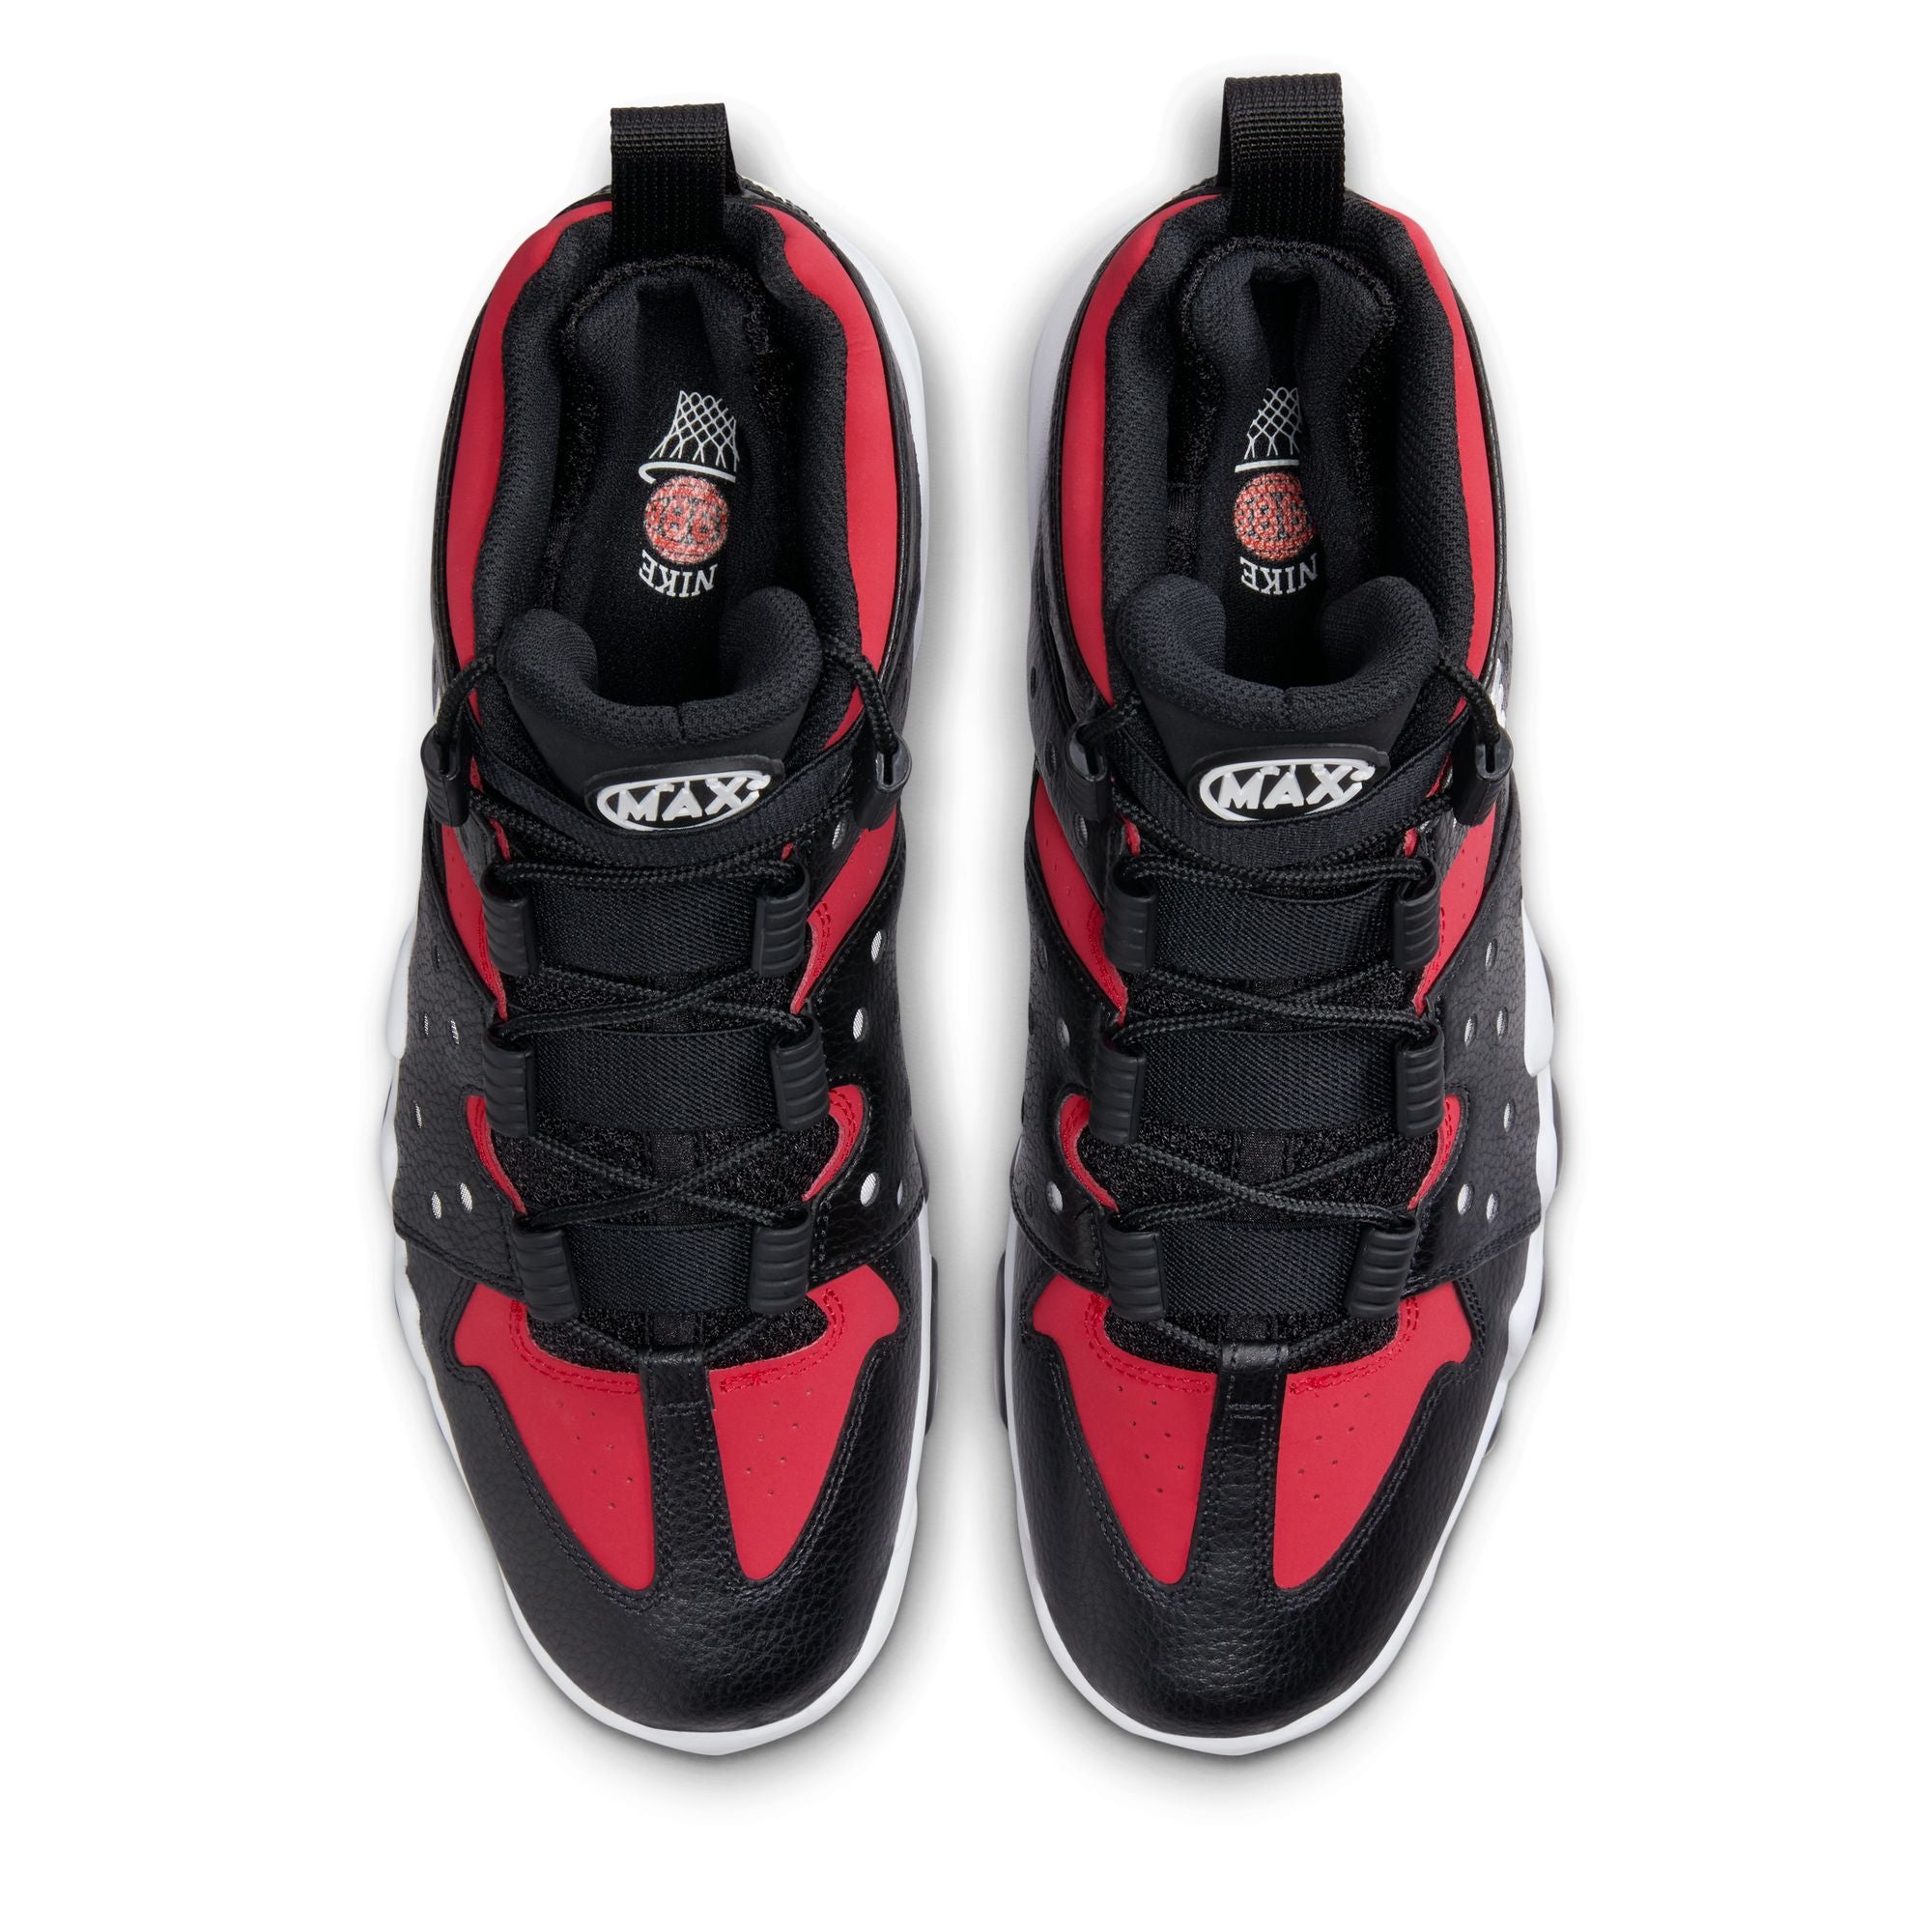 Nike Air Max2 CB '94 'Black/Gym Red'